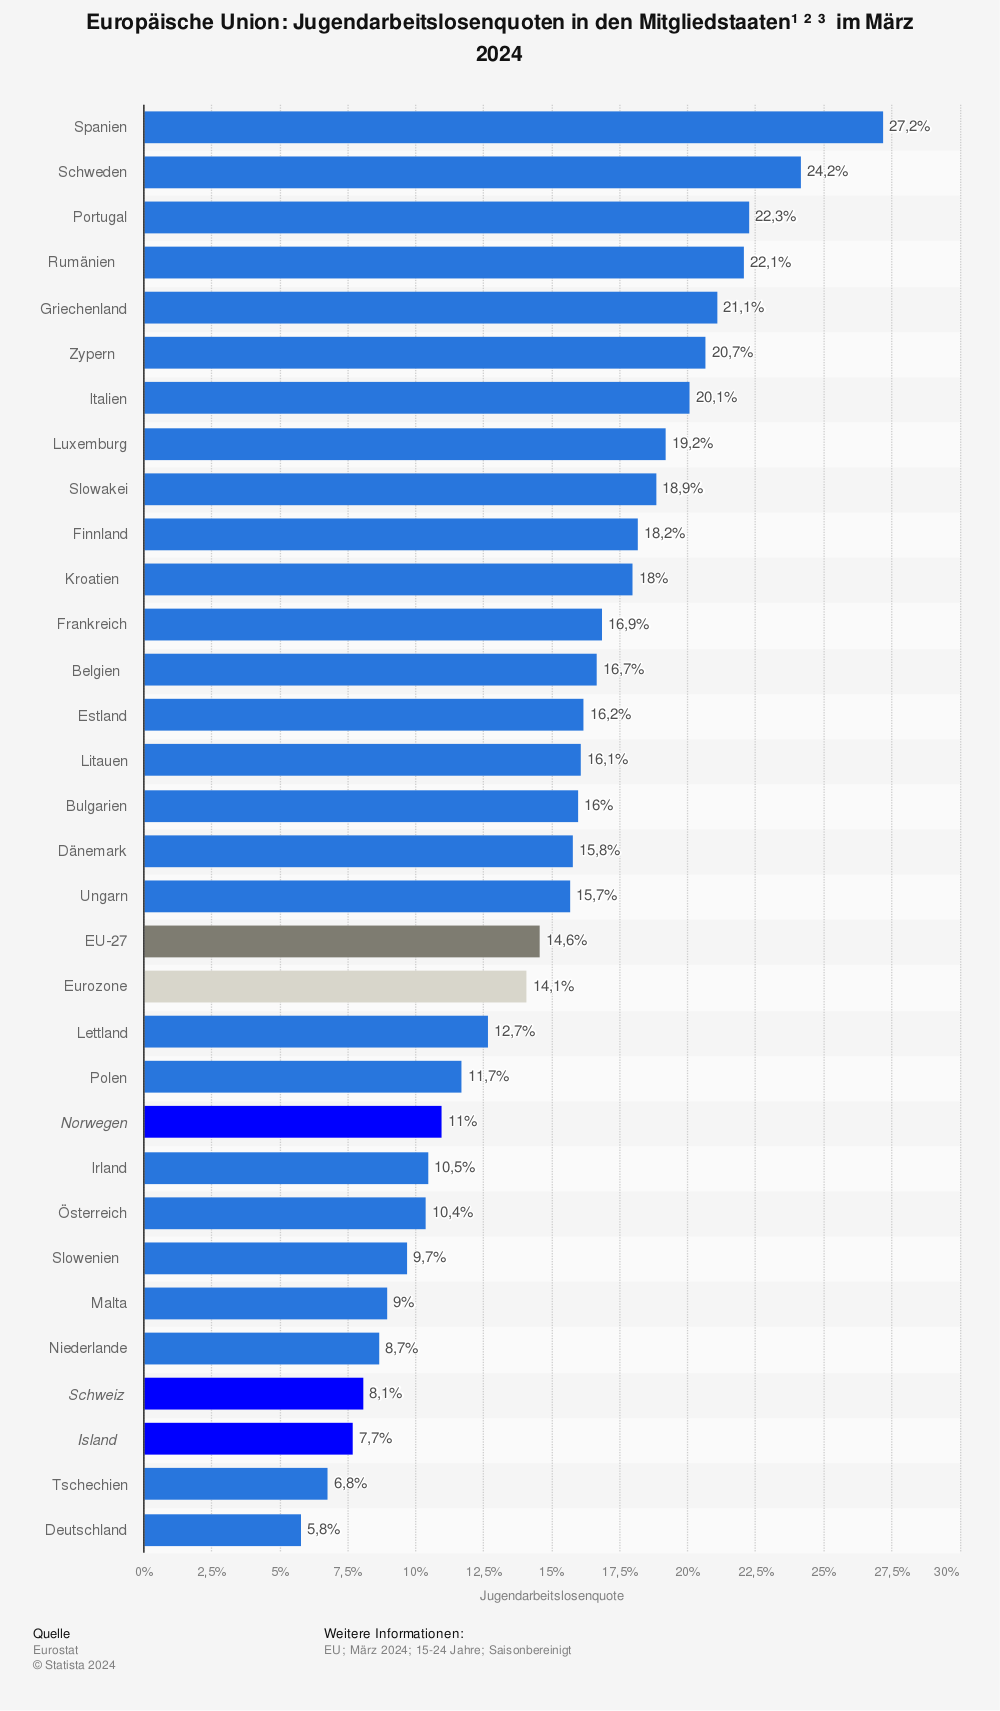 Jugendarbeitslosenquote in den EU-Ländern Mai 2012